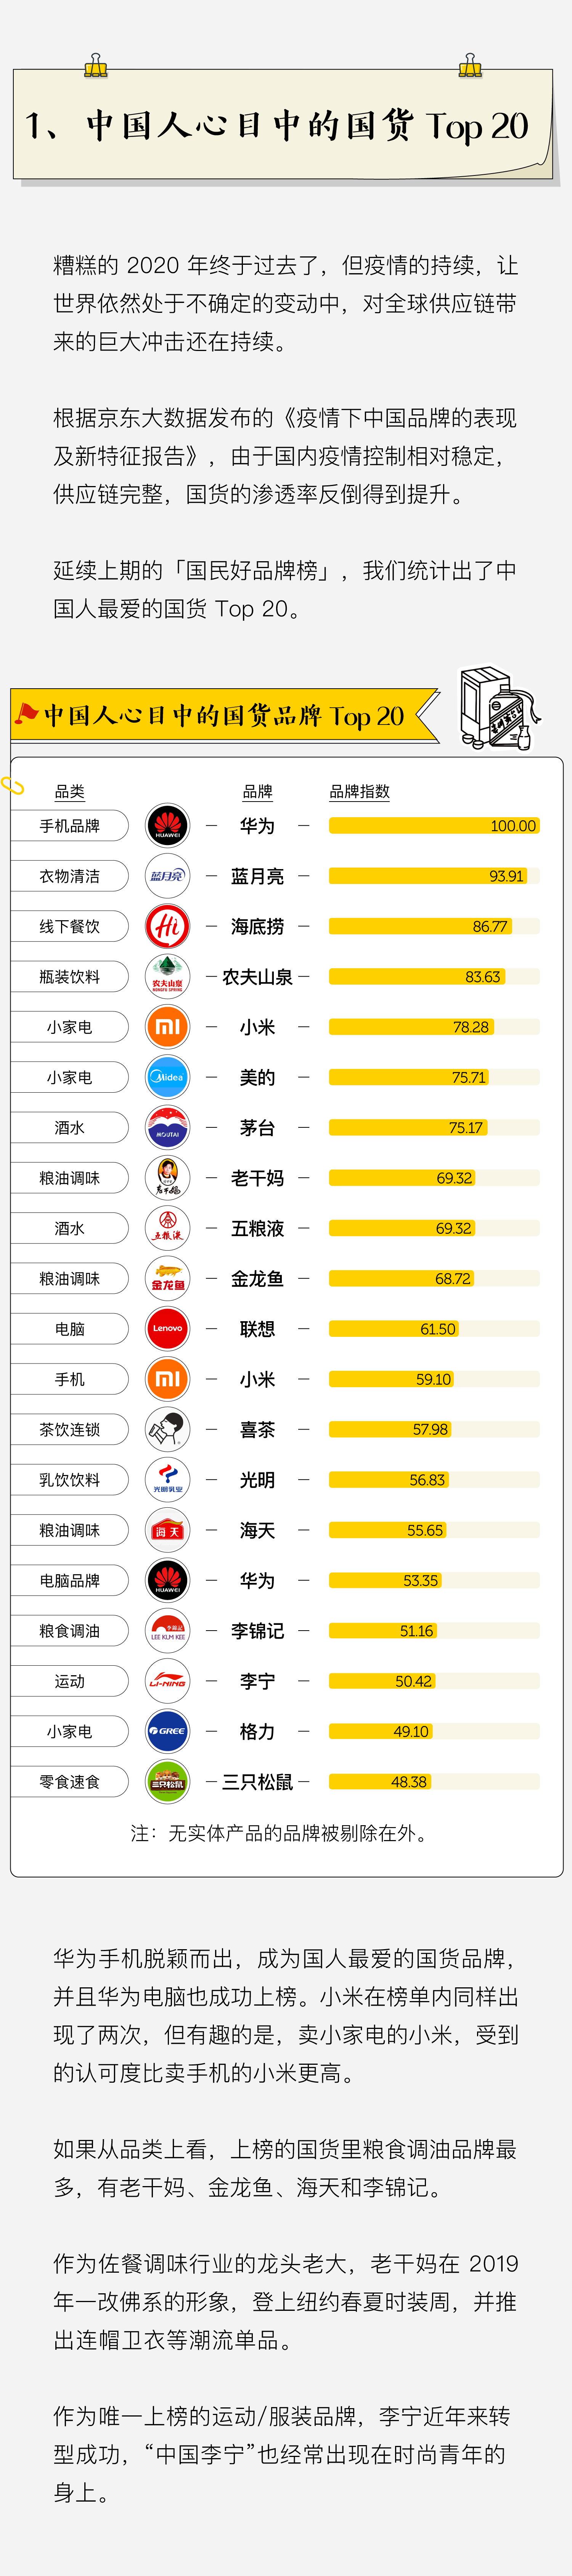 九州体育_
2020年中国人最爱国货 喜茶输给了它(图2)